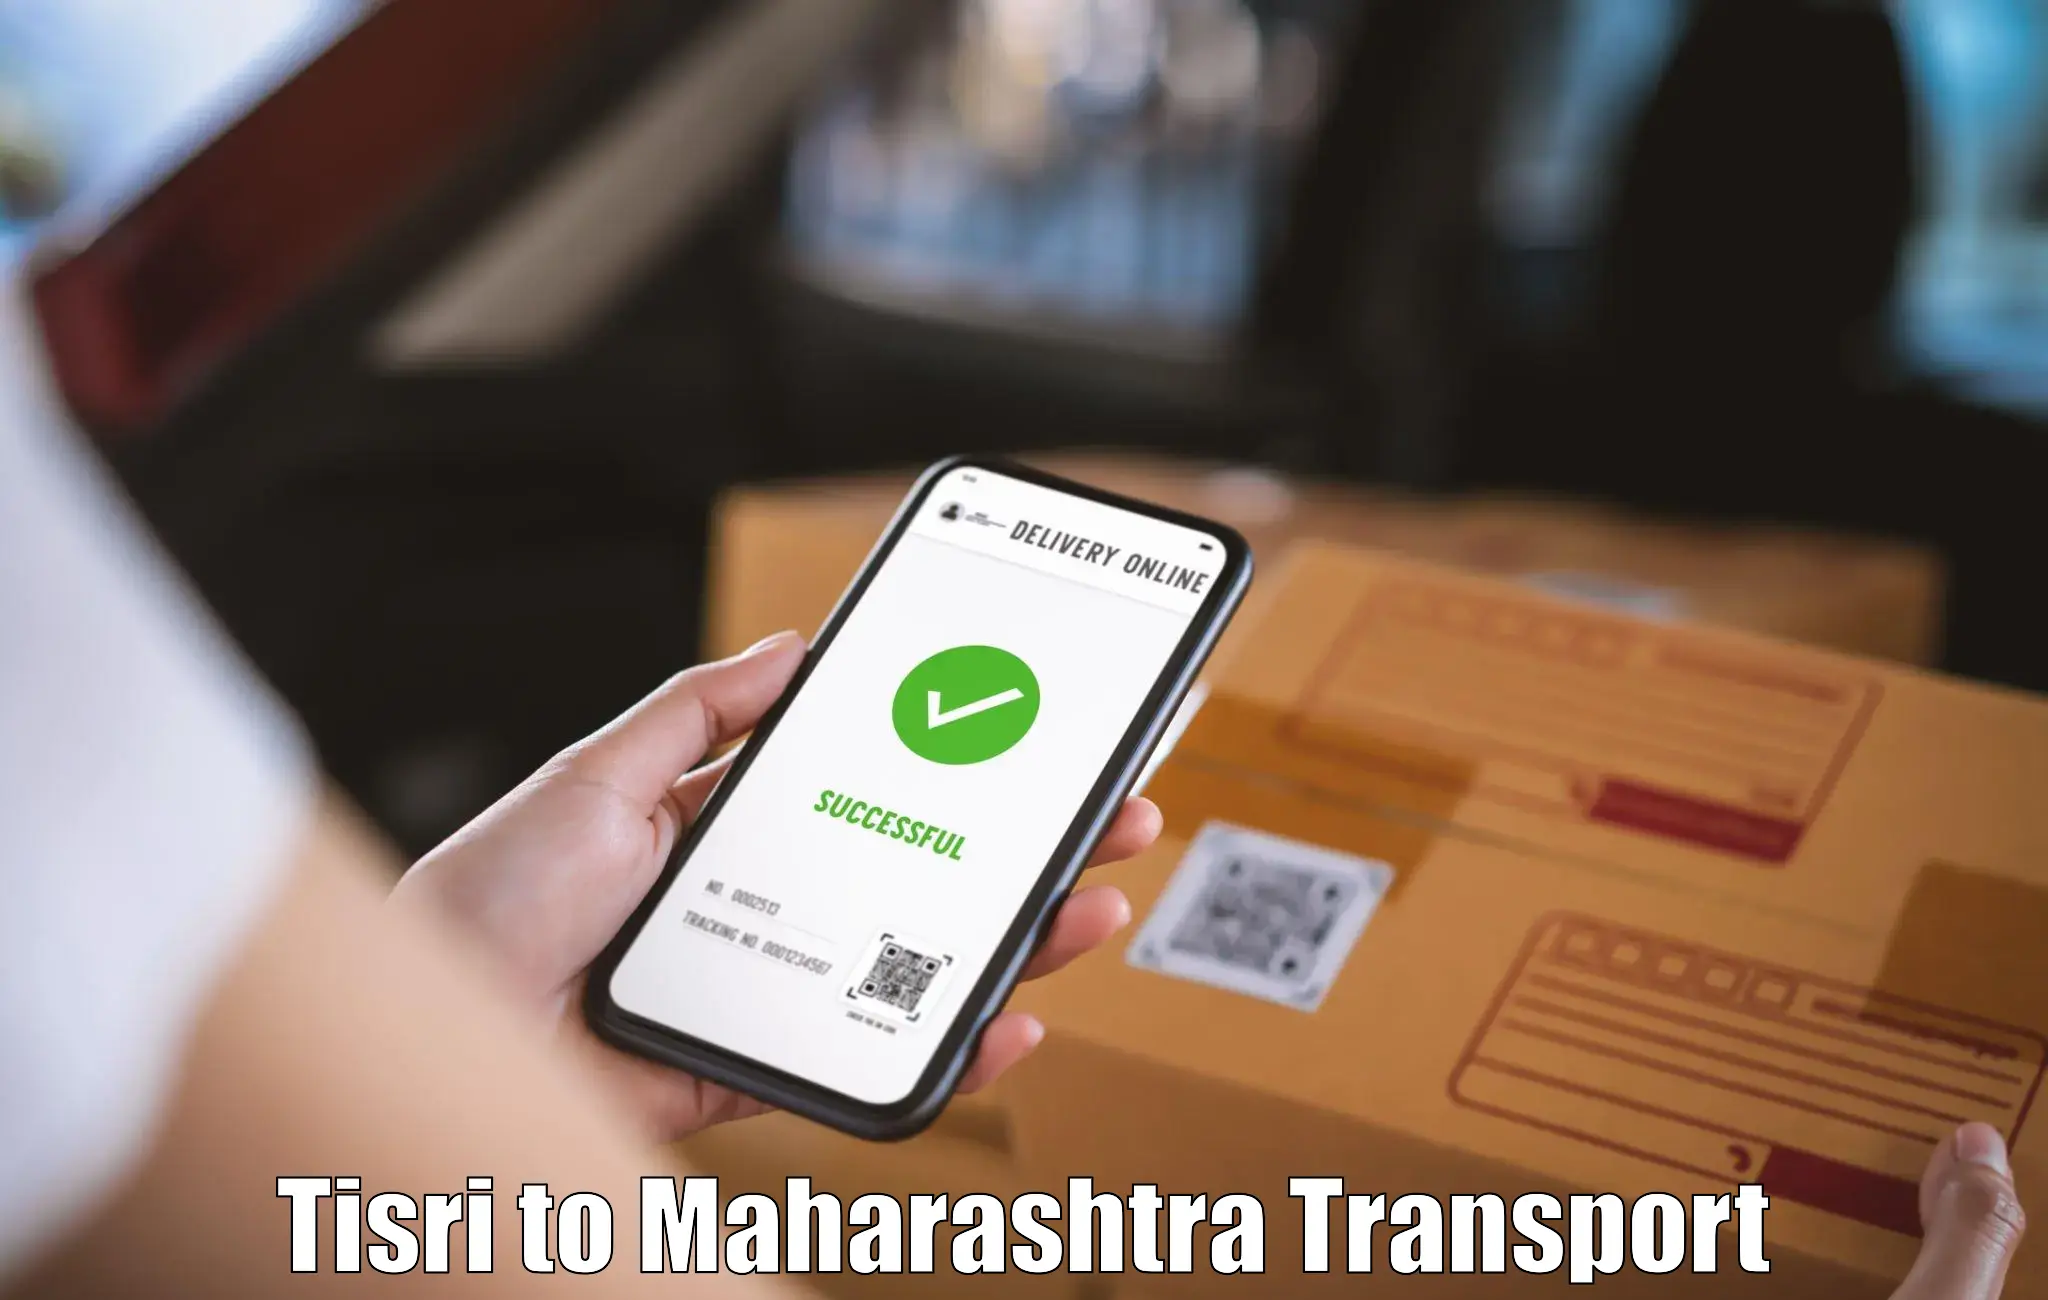 Road transport services Tisri to Borivali